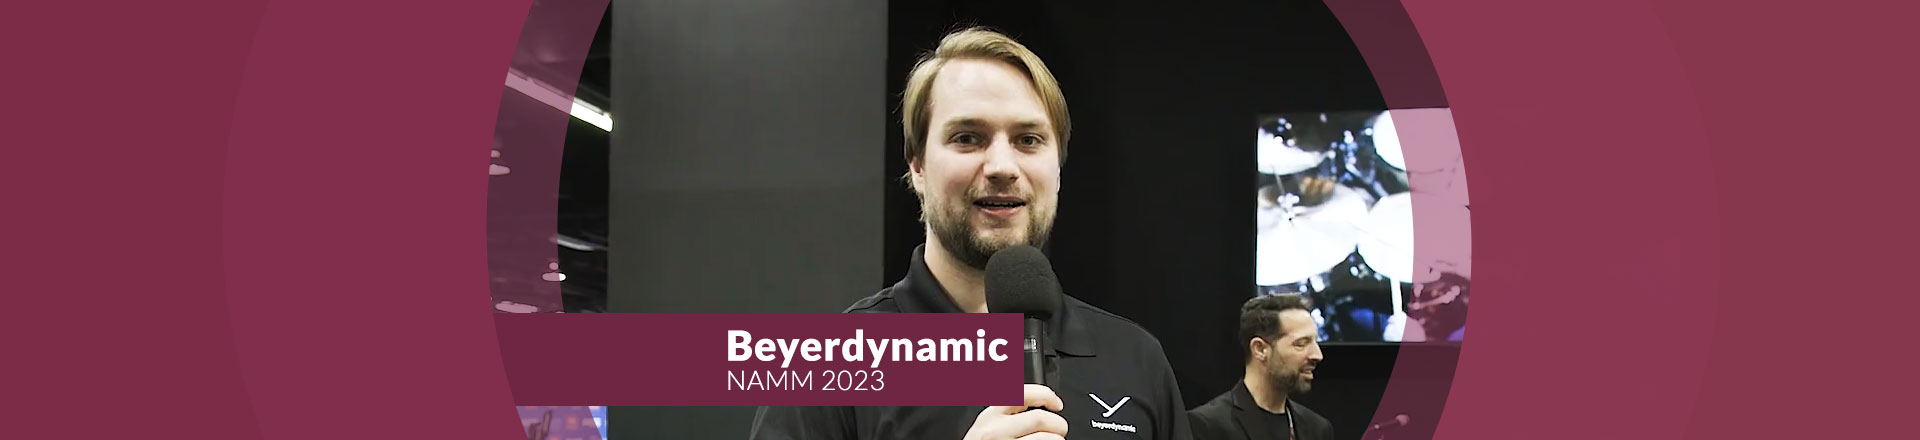 Odświeżone mikrofony Beyerdynamica - NAMM 2023